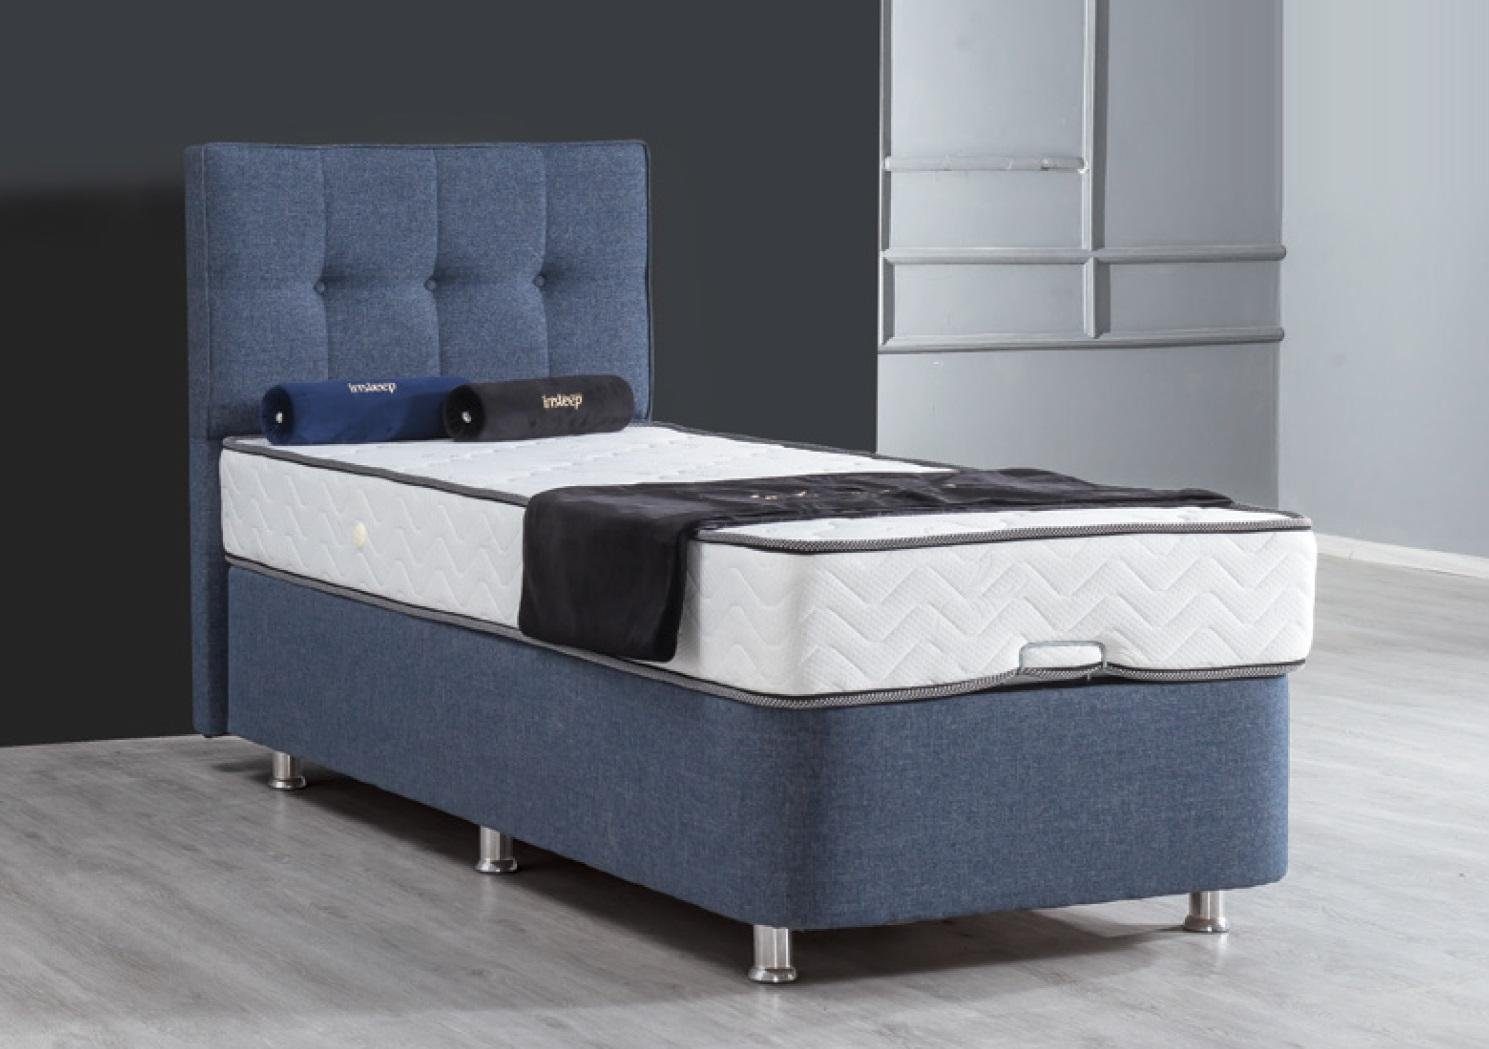 JVmoebel Bett Bett Blau Einzelbett Metall Modern Betten Luxus Stoff Bett